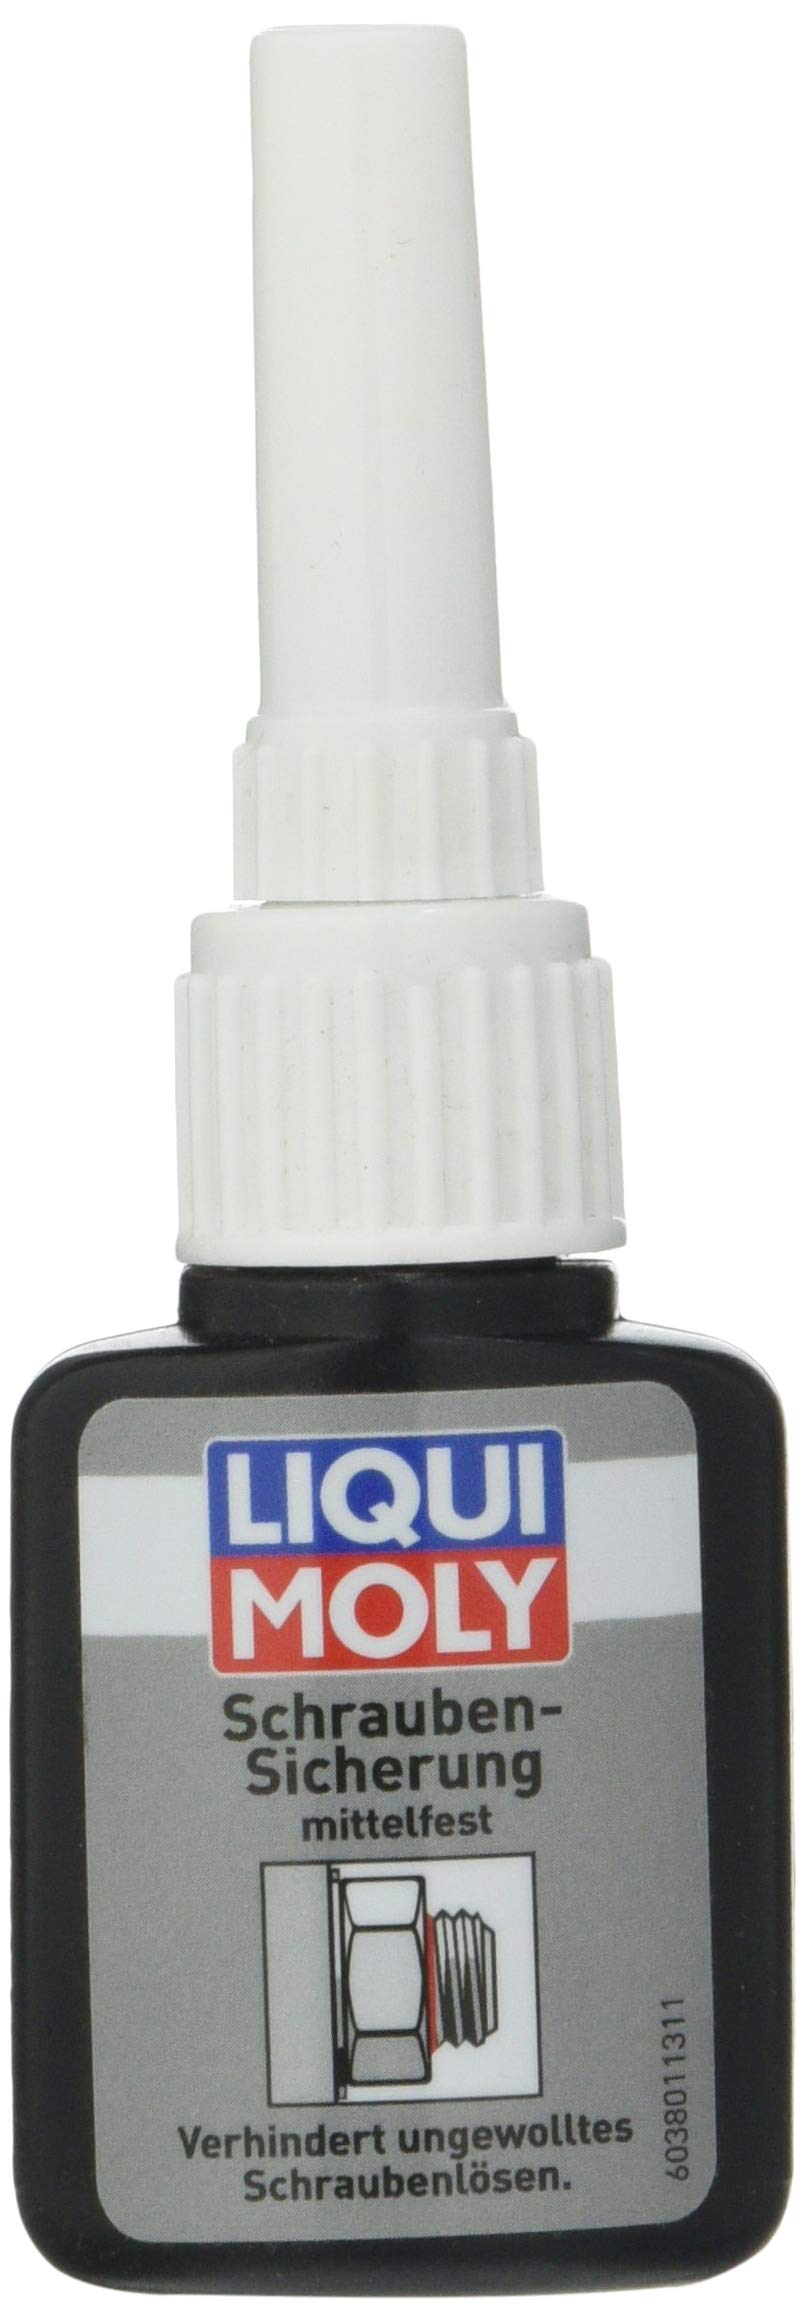 LIQUI MOLY 3801 Schraubensicherung mittelfest 10 g von Liqui Moly